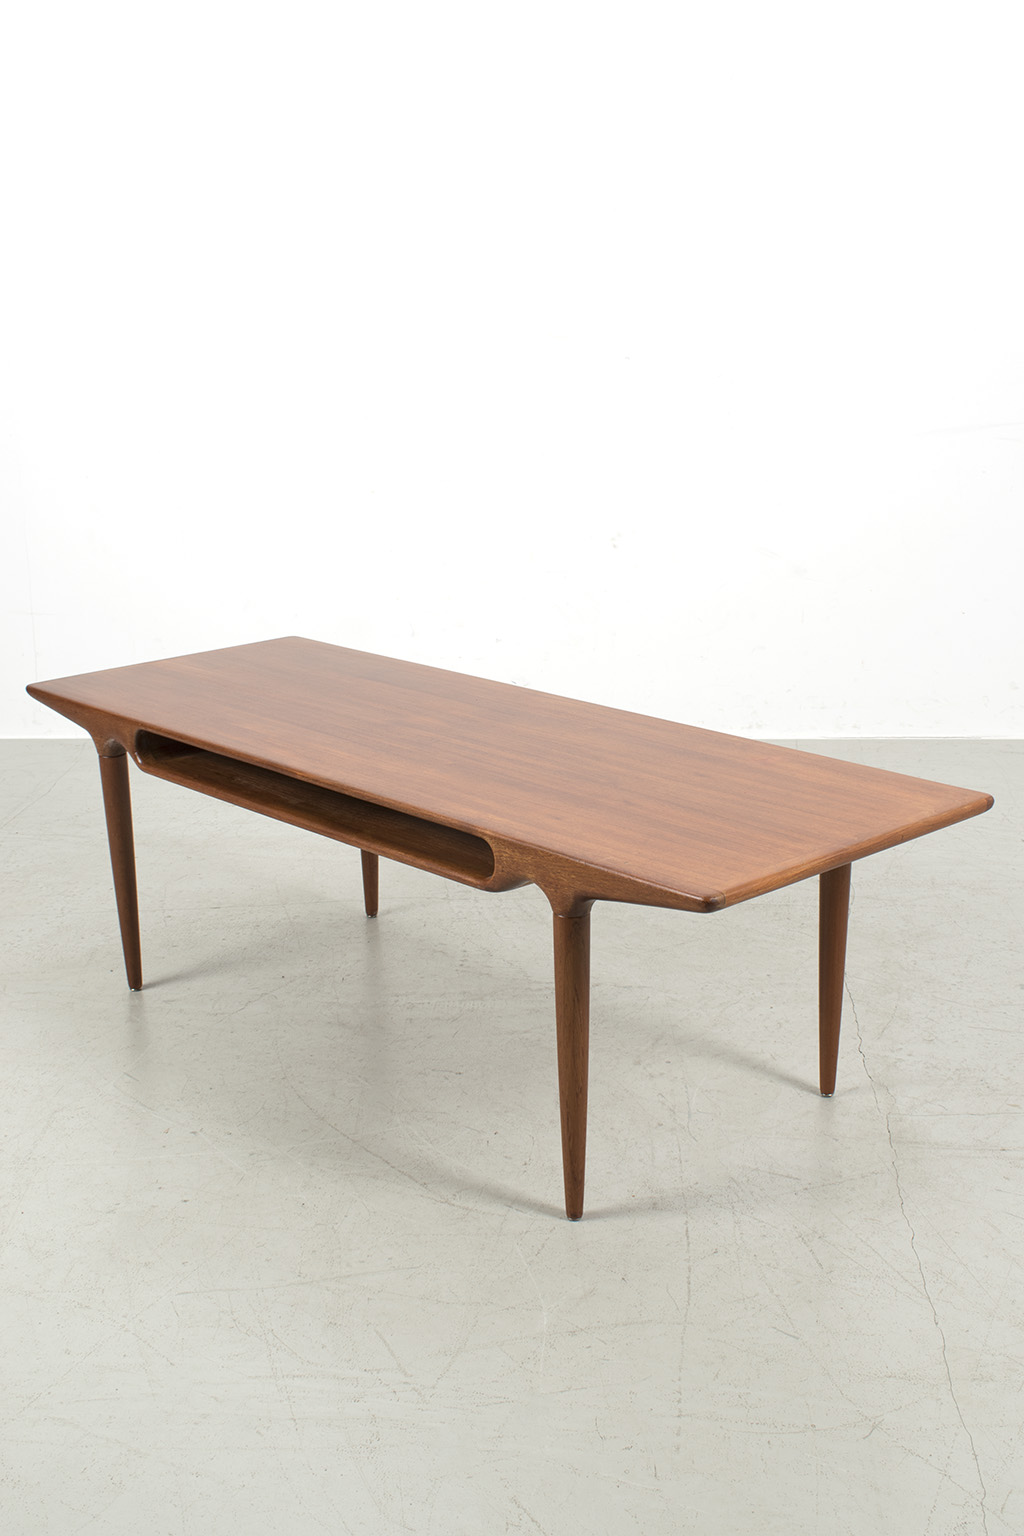 Coffee table mod. 240 by Johannes Andersen